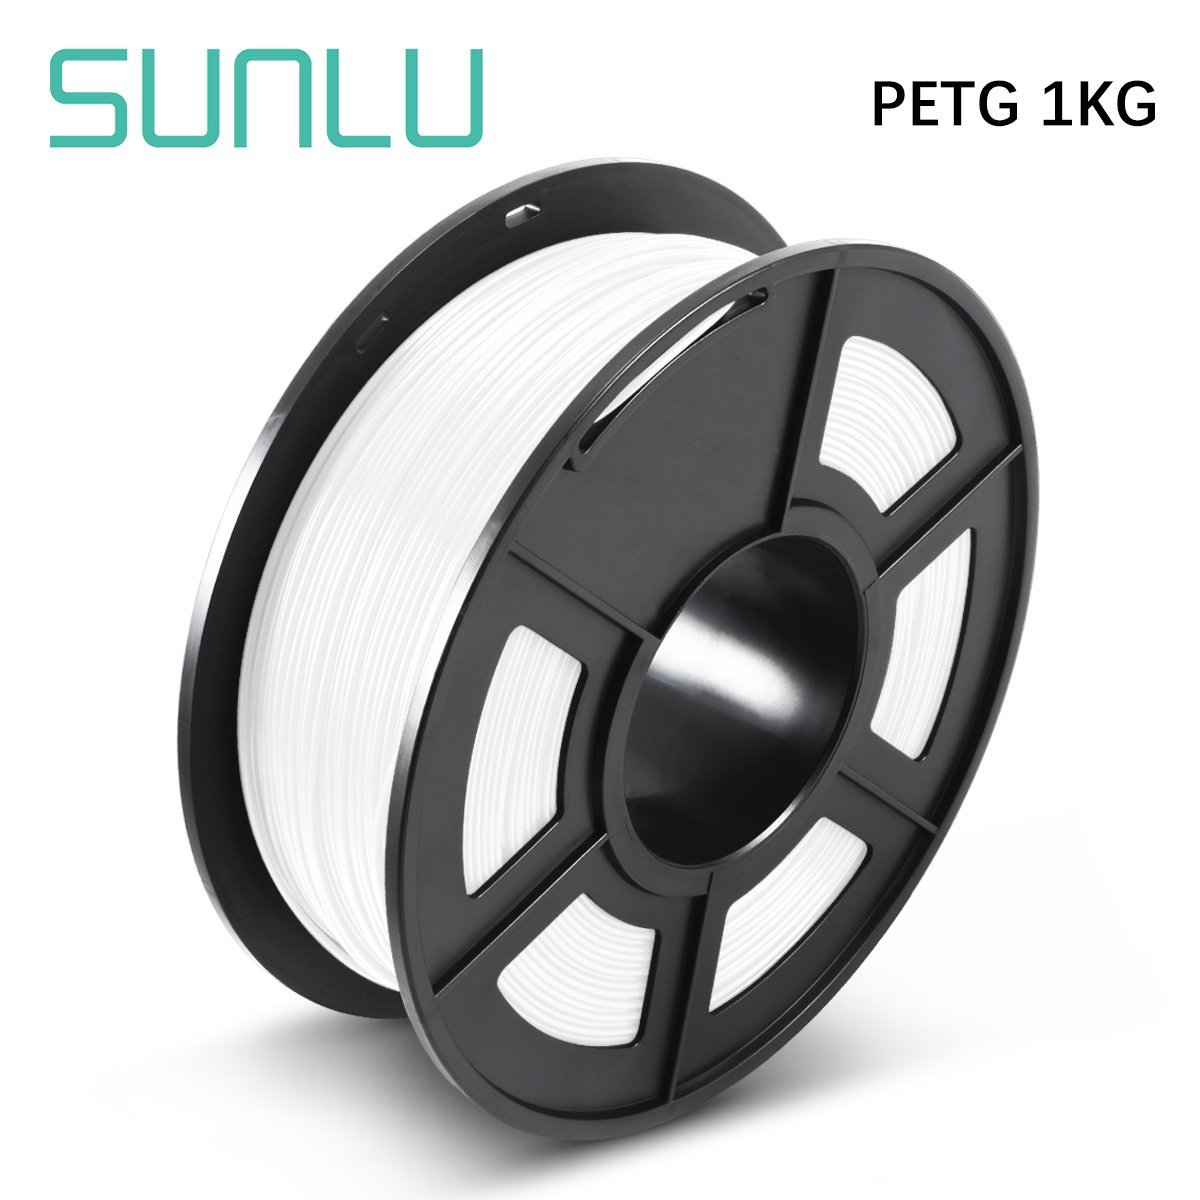 SUNLU-1KG-PETG-G-New-Upgraded-175MM-Filament-100-No-Bubble-filament-for-3D-Printer-1861765-1